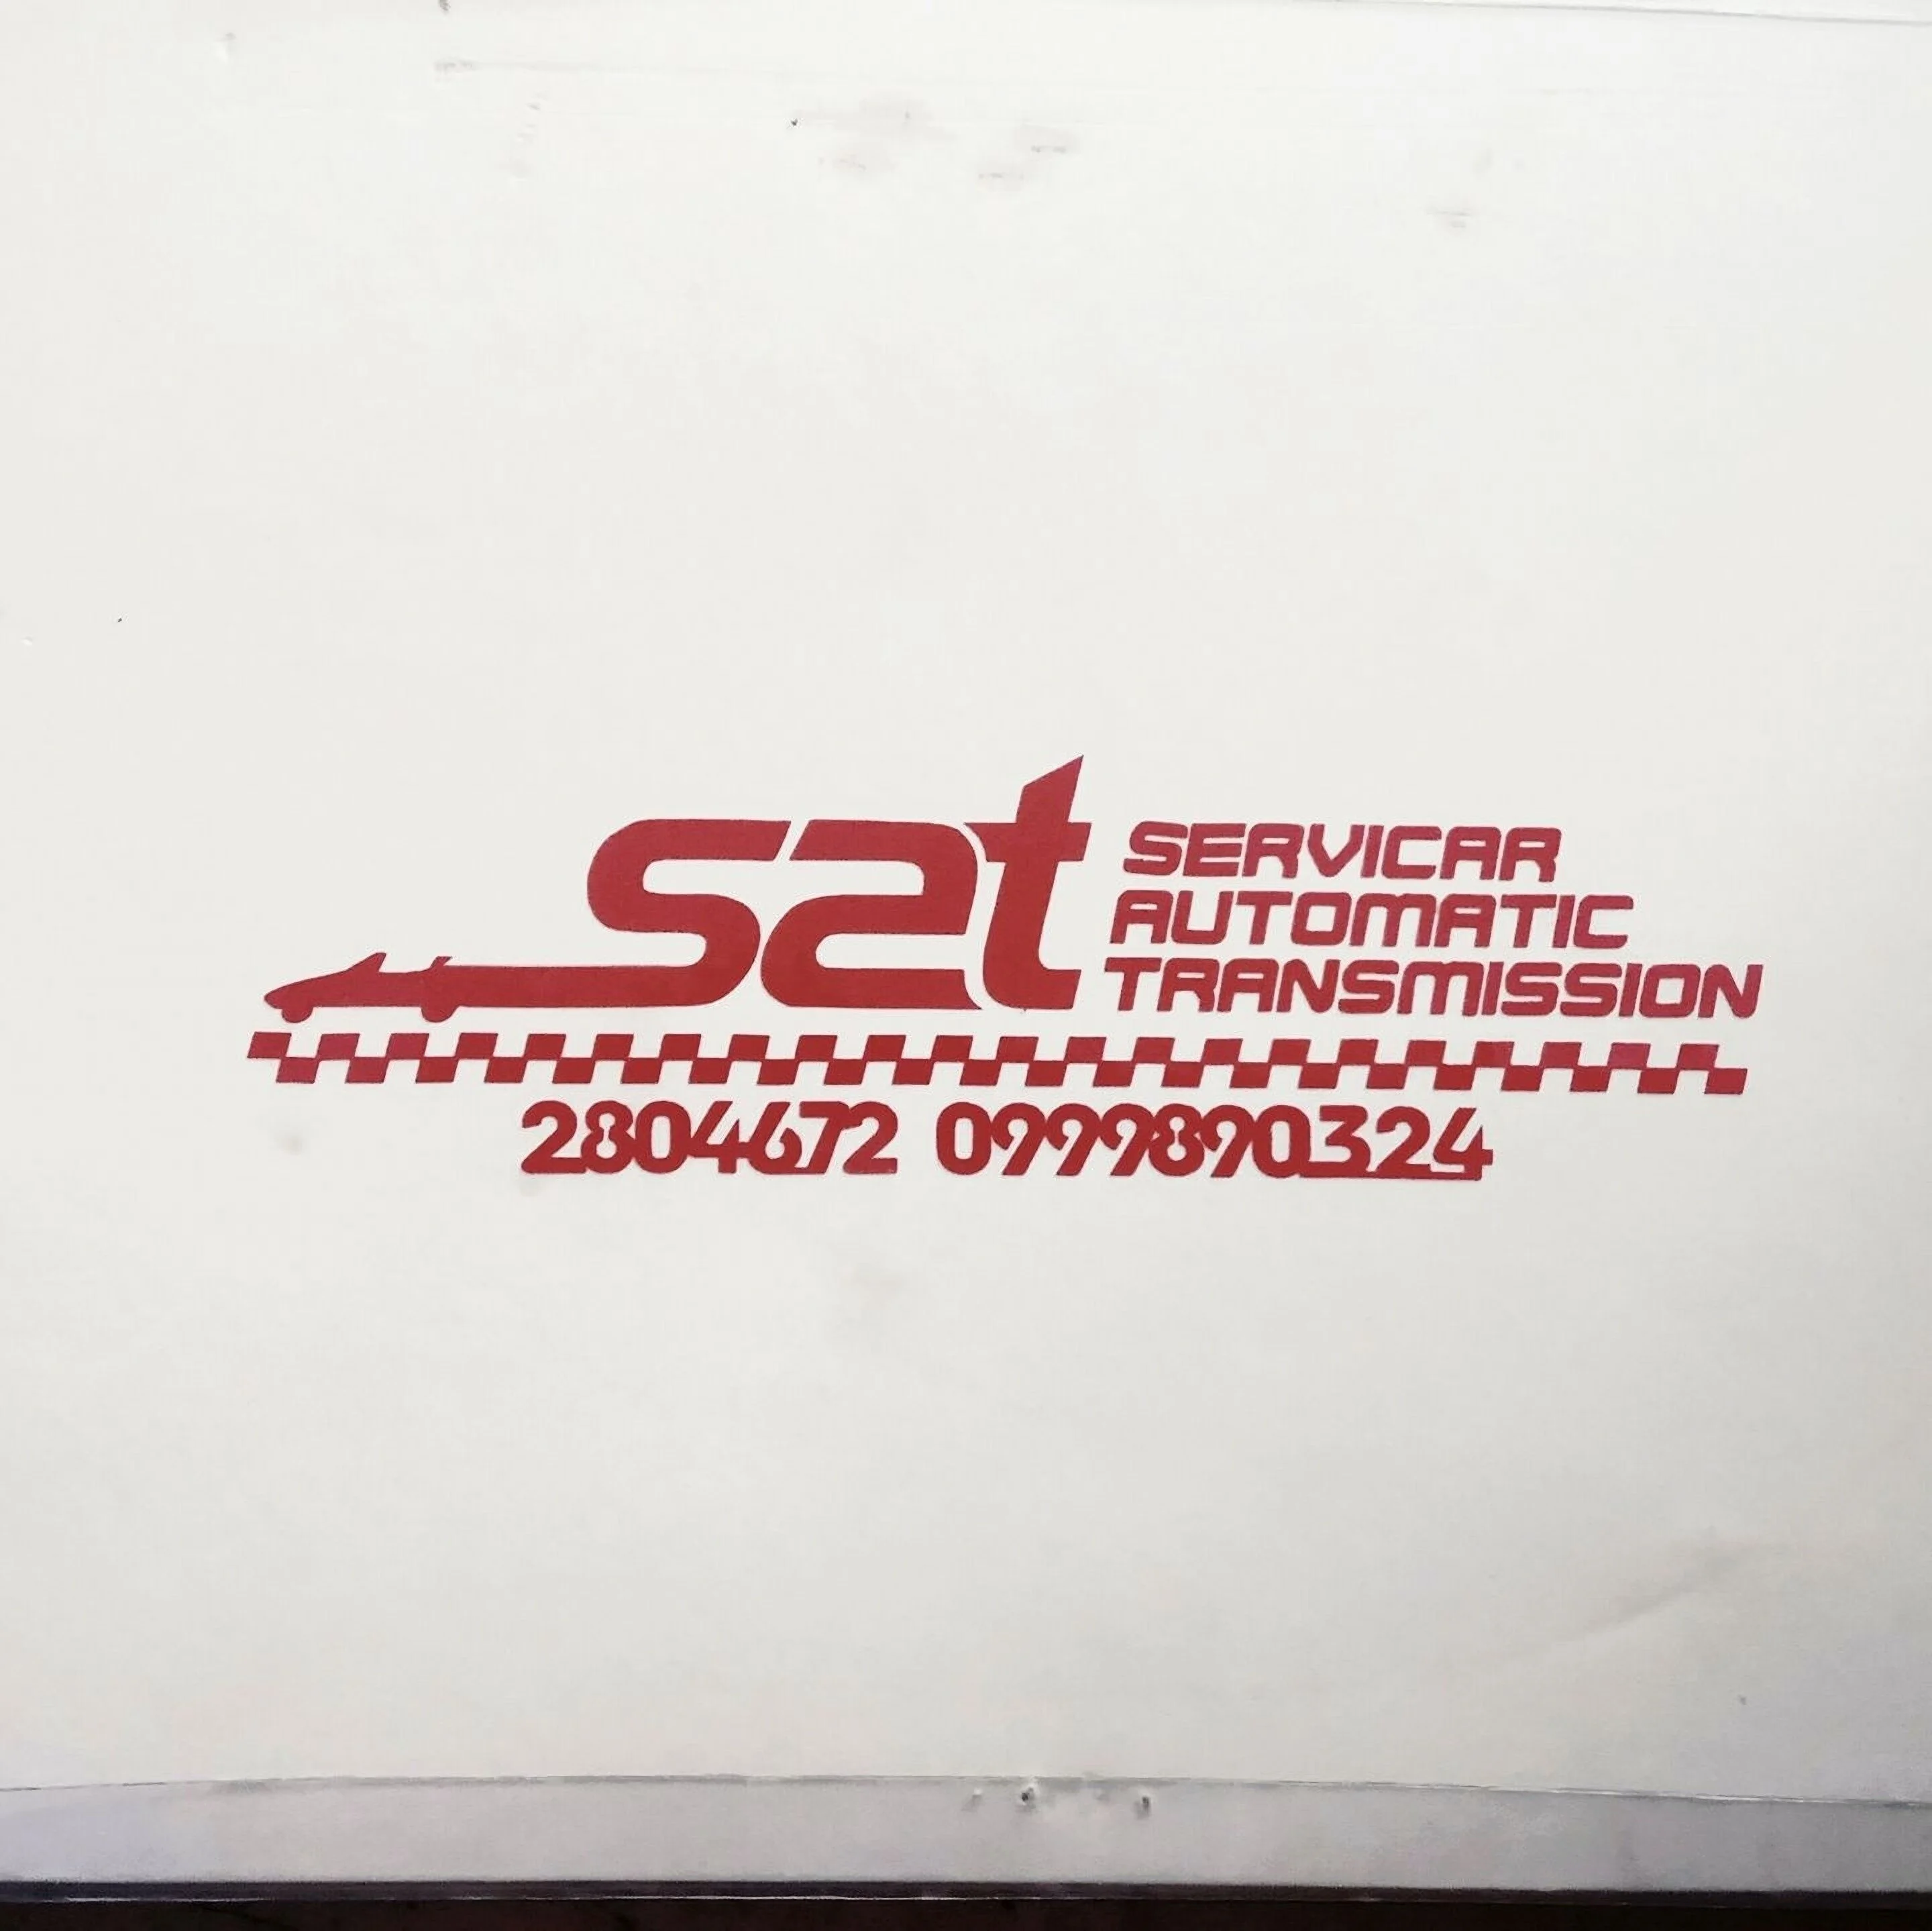 SAT Servicar Automatic Transmission-2808